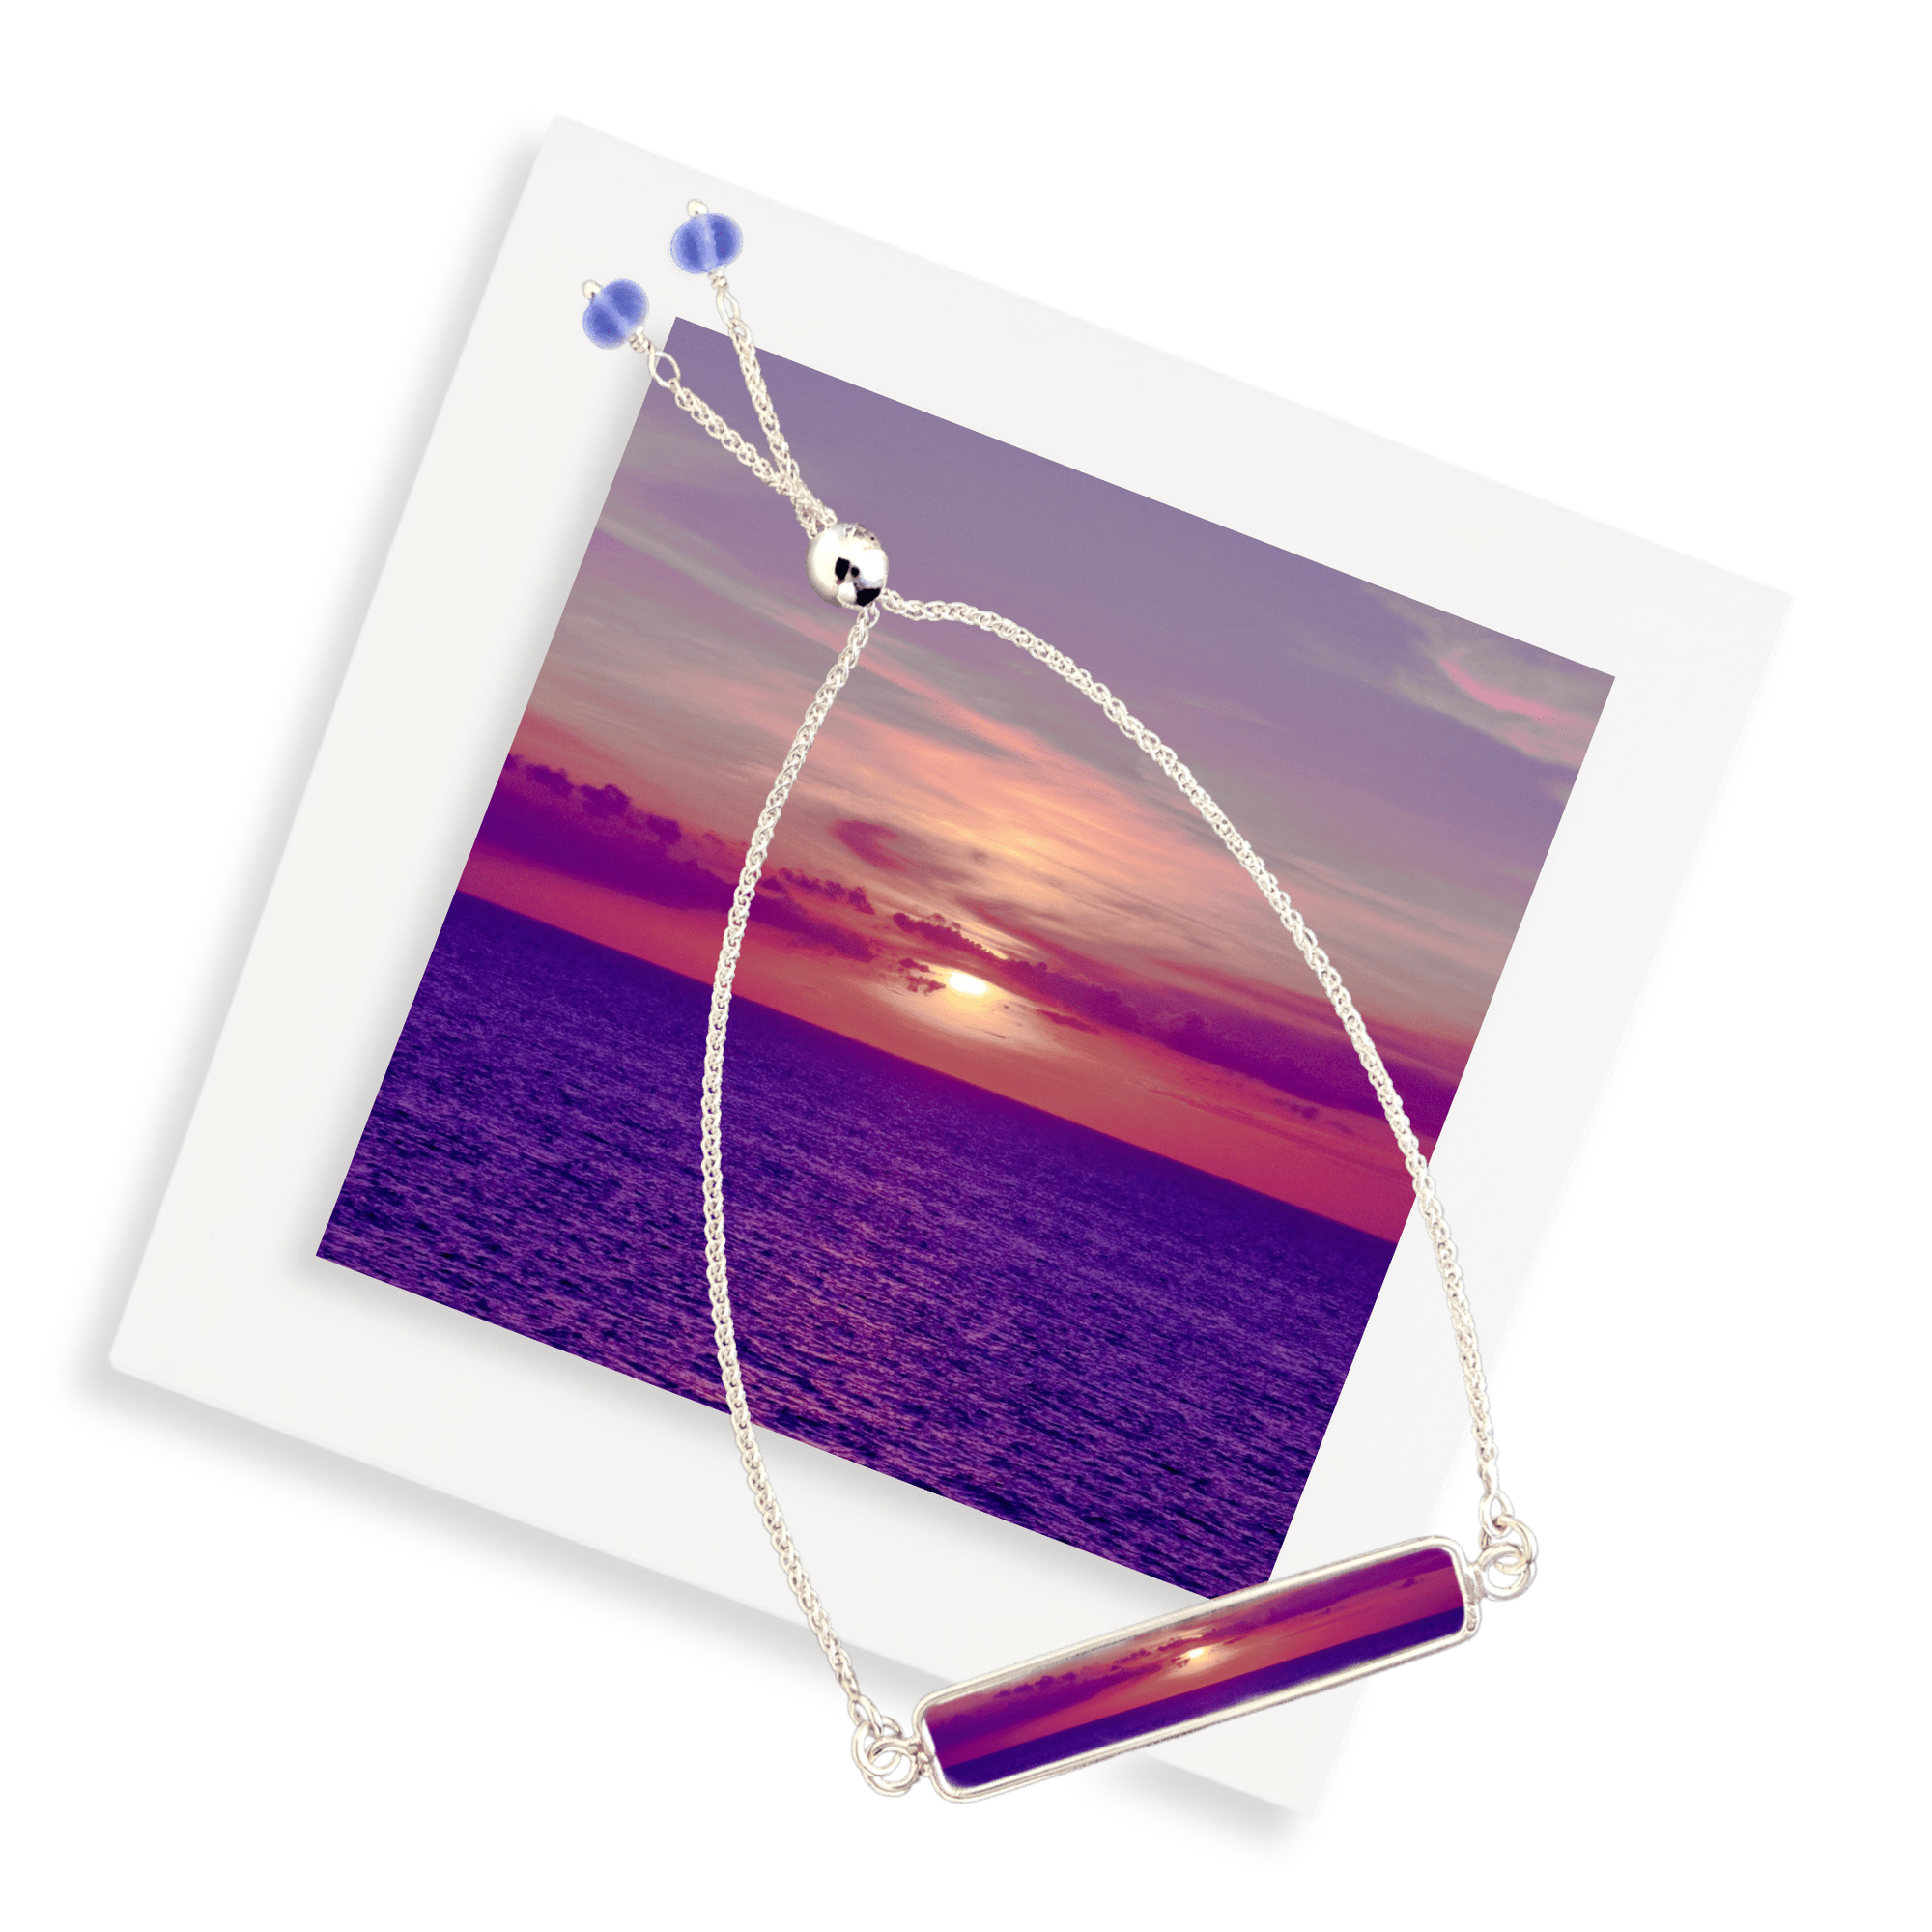 Key West Sunset Bracelet by Bev Conte